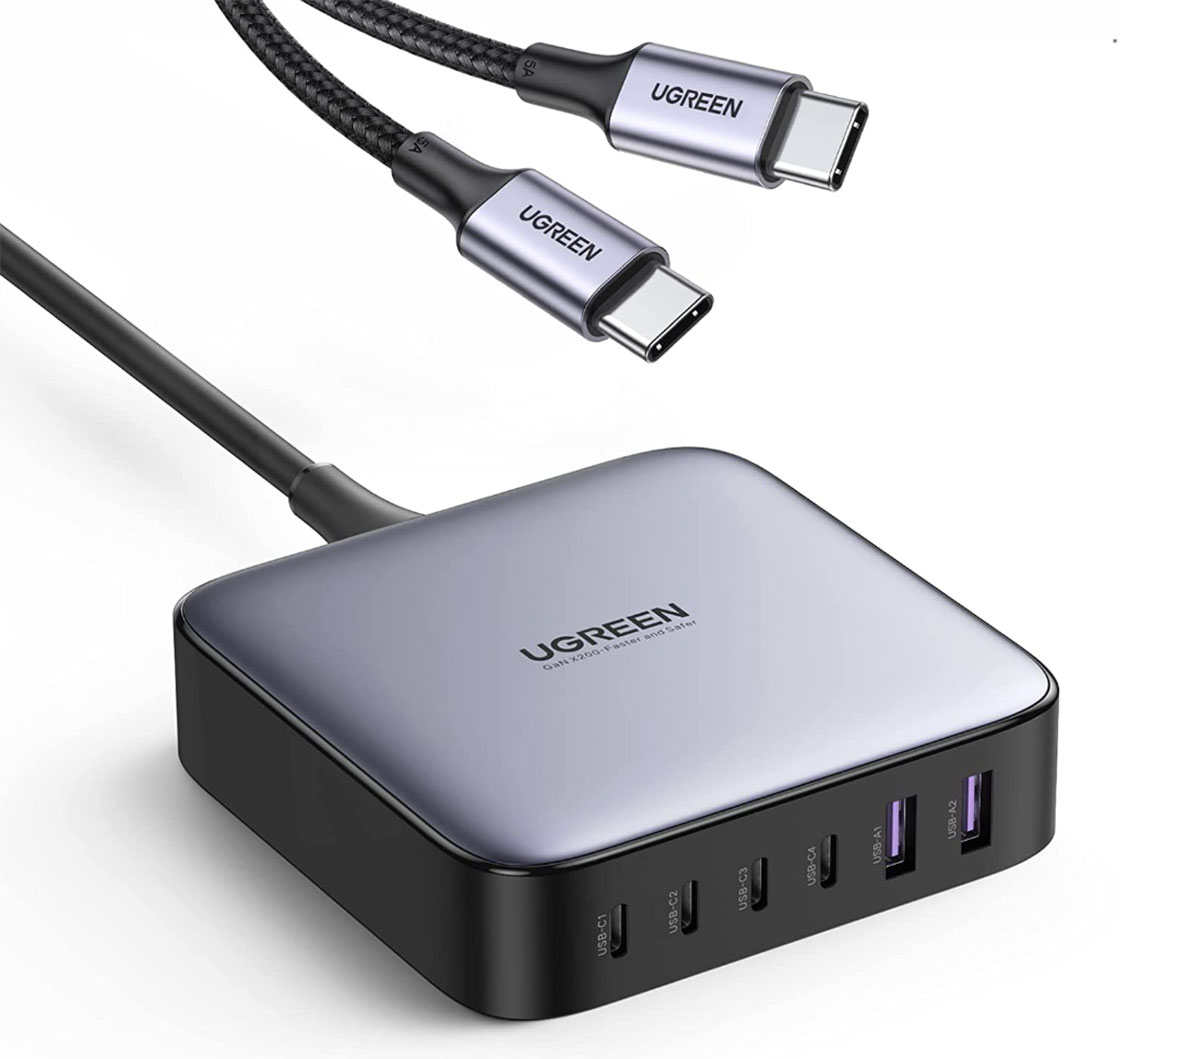 UGreen Nexode 200W USB-C Desktop Charger - Best mixed USB-A/USB-C desktop charger